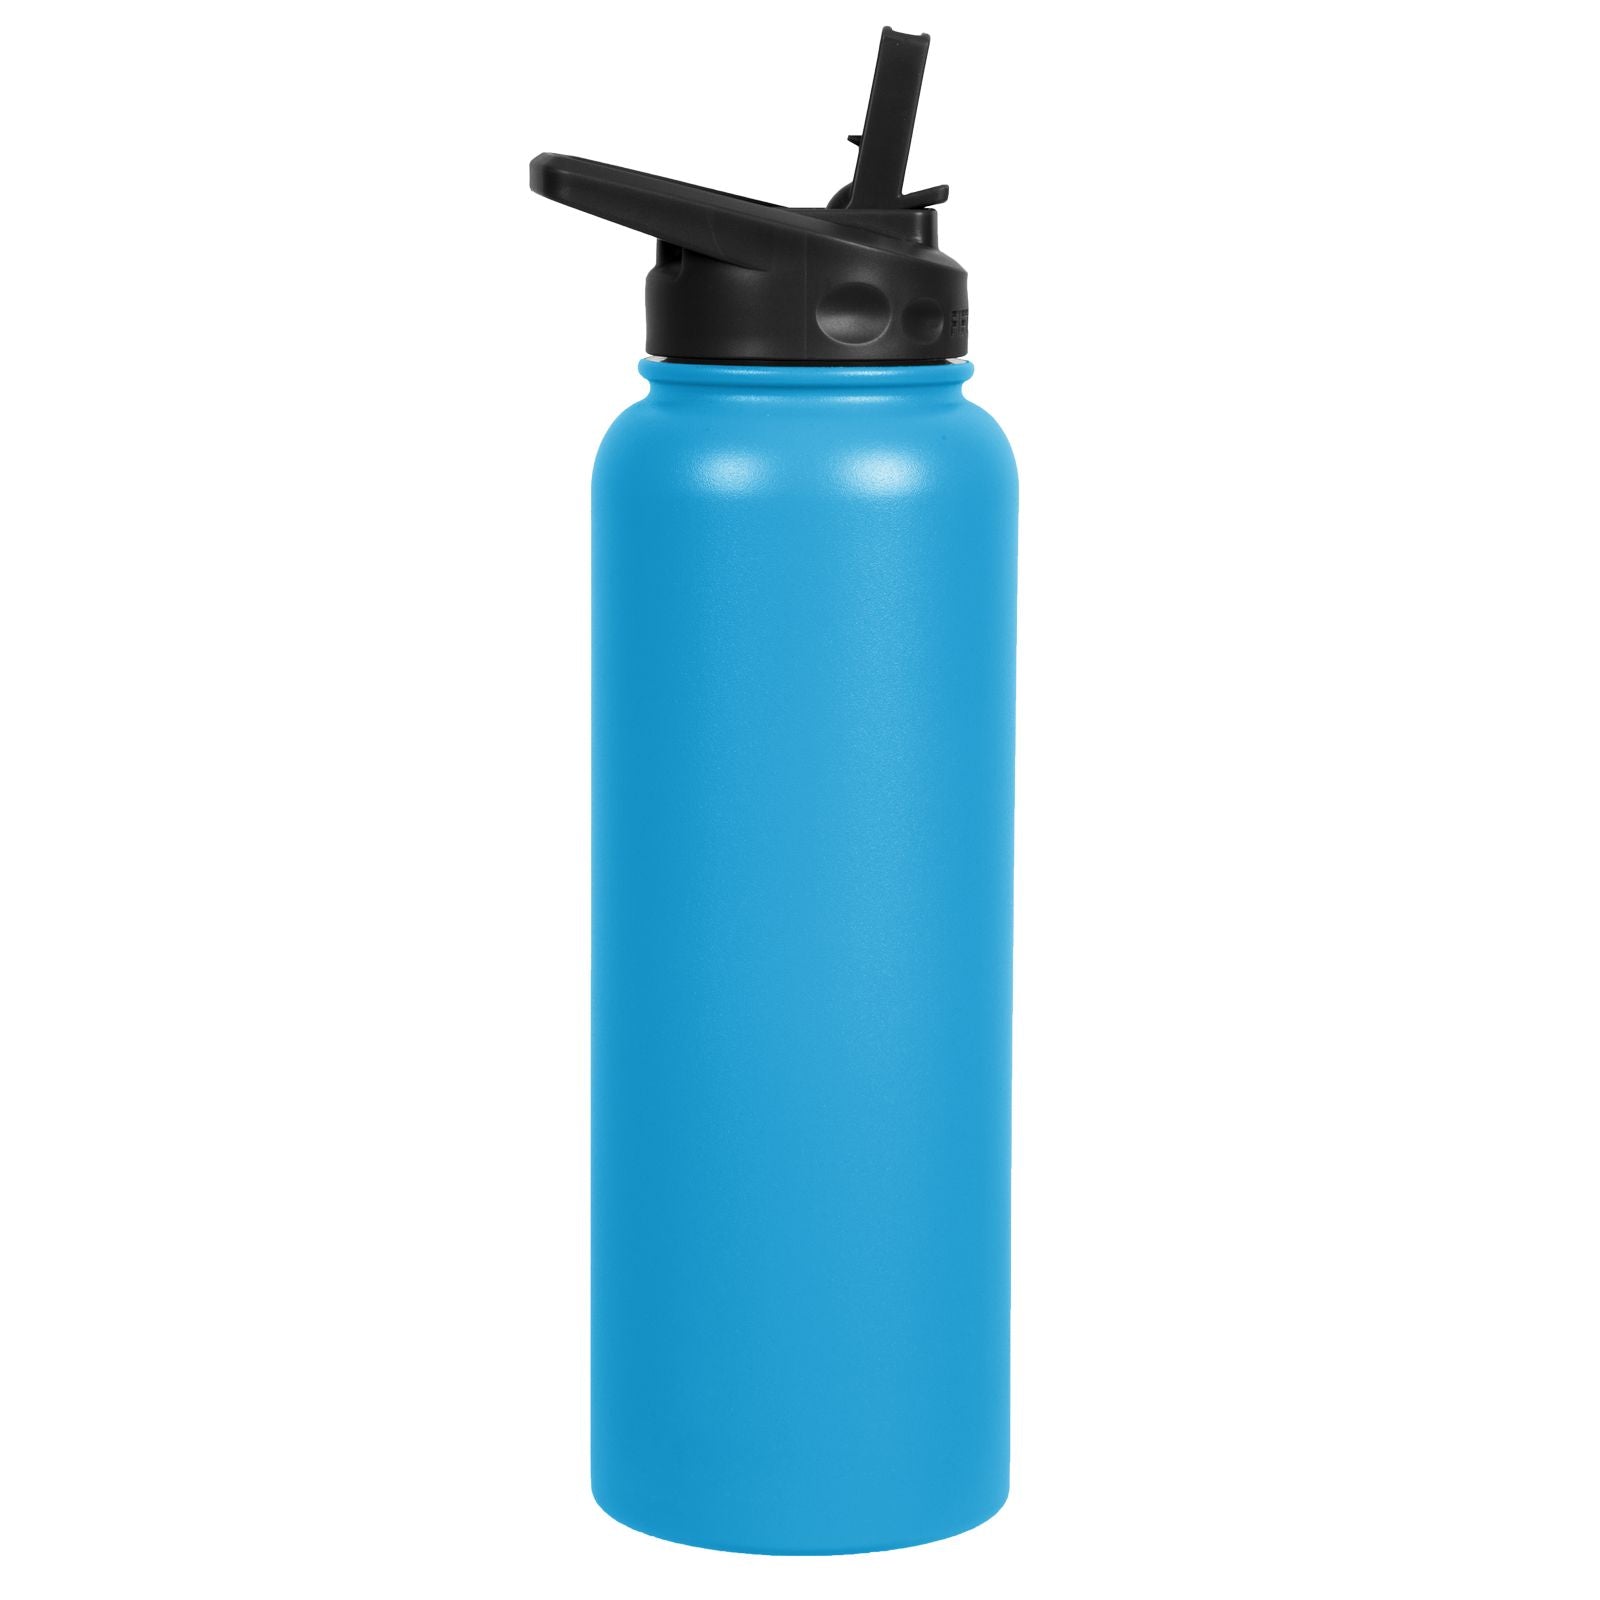 100 Bulk Pack 20 Ounce Water Bottles - White Bottle With Blue Lids